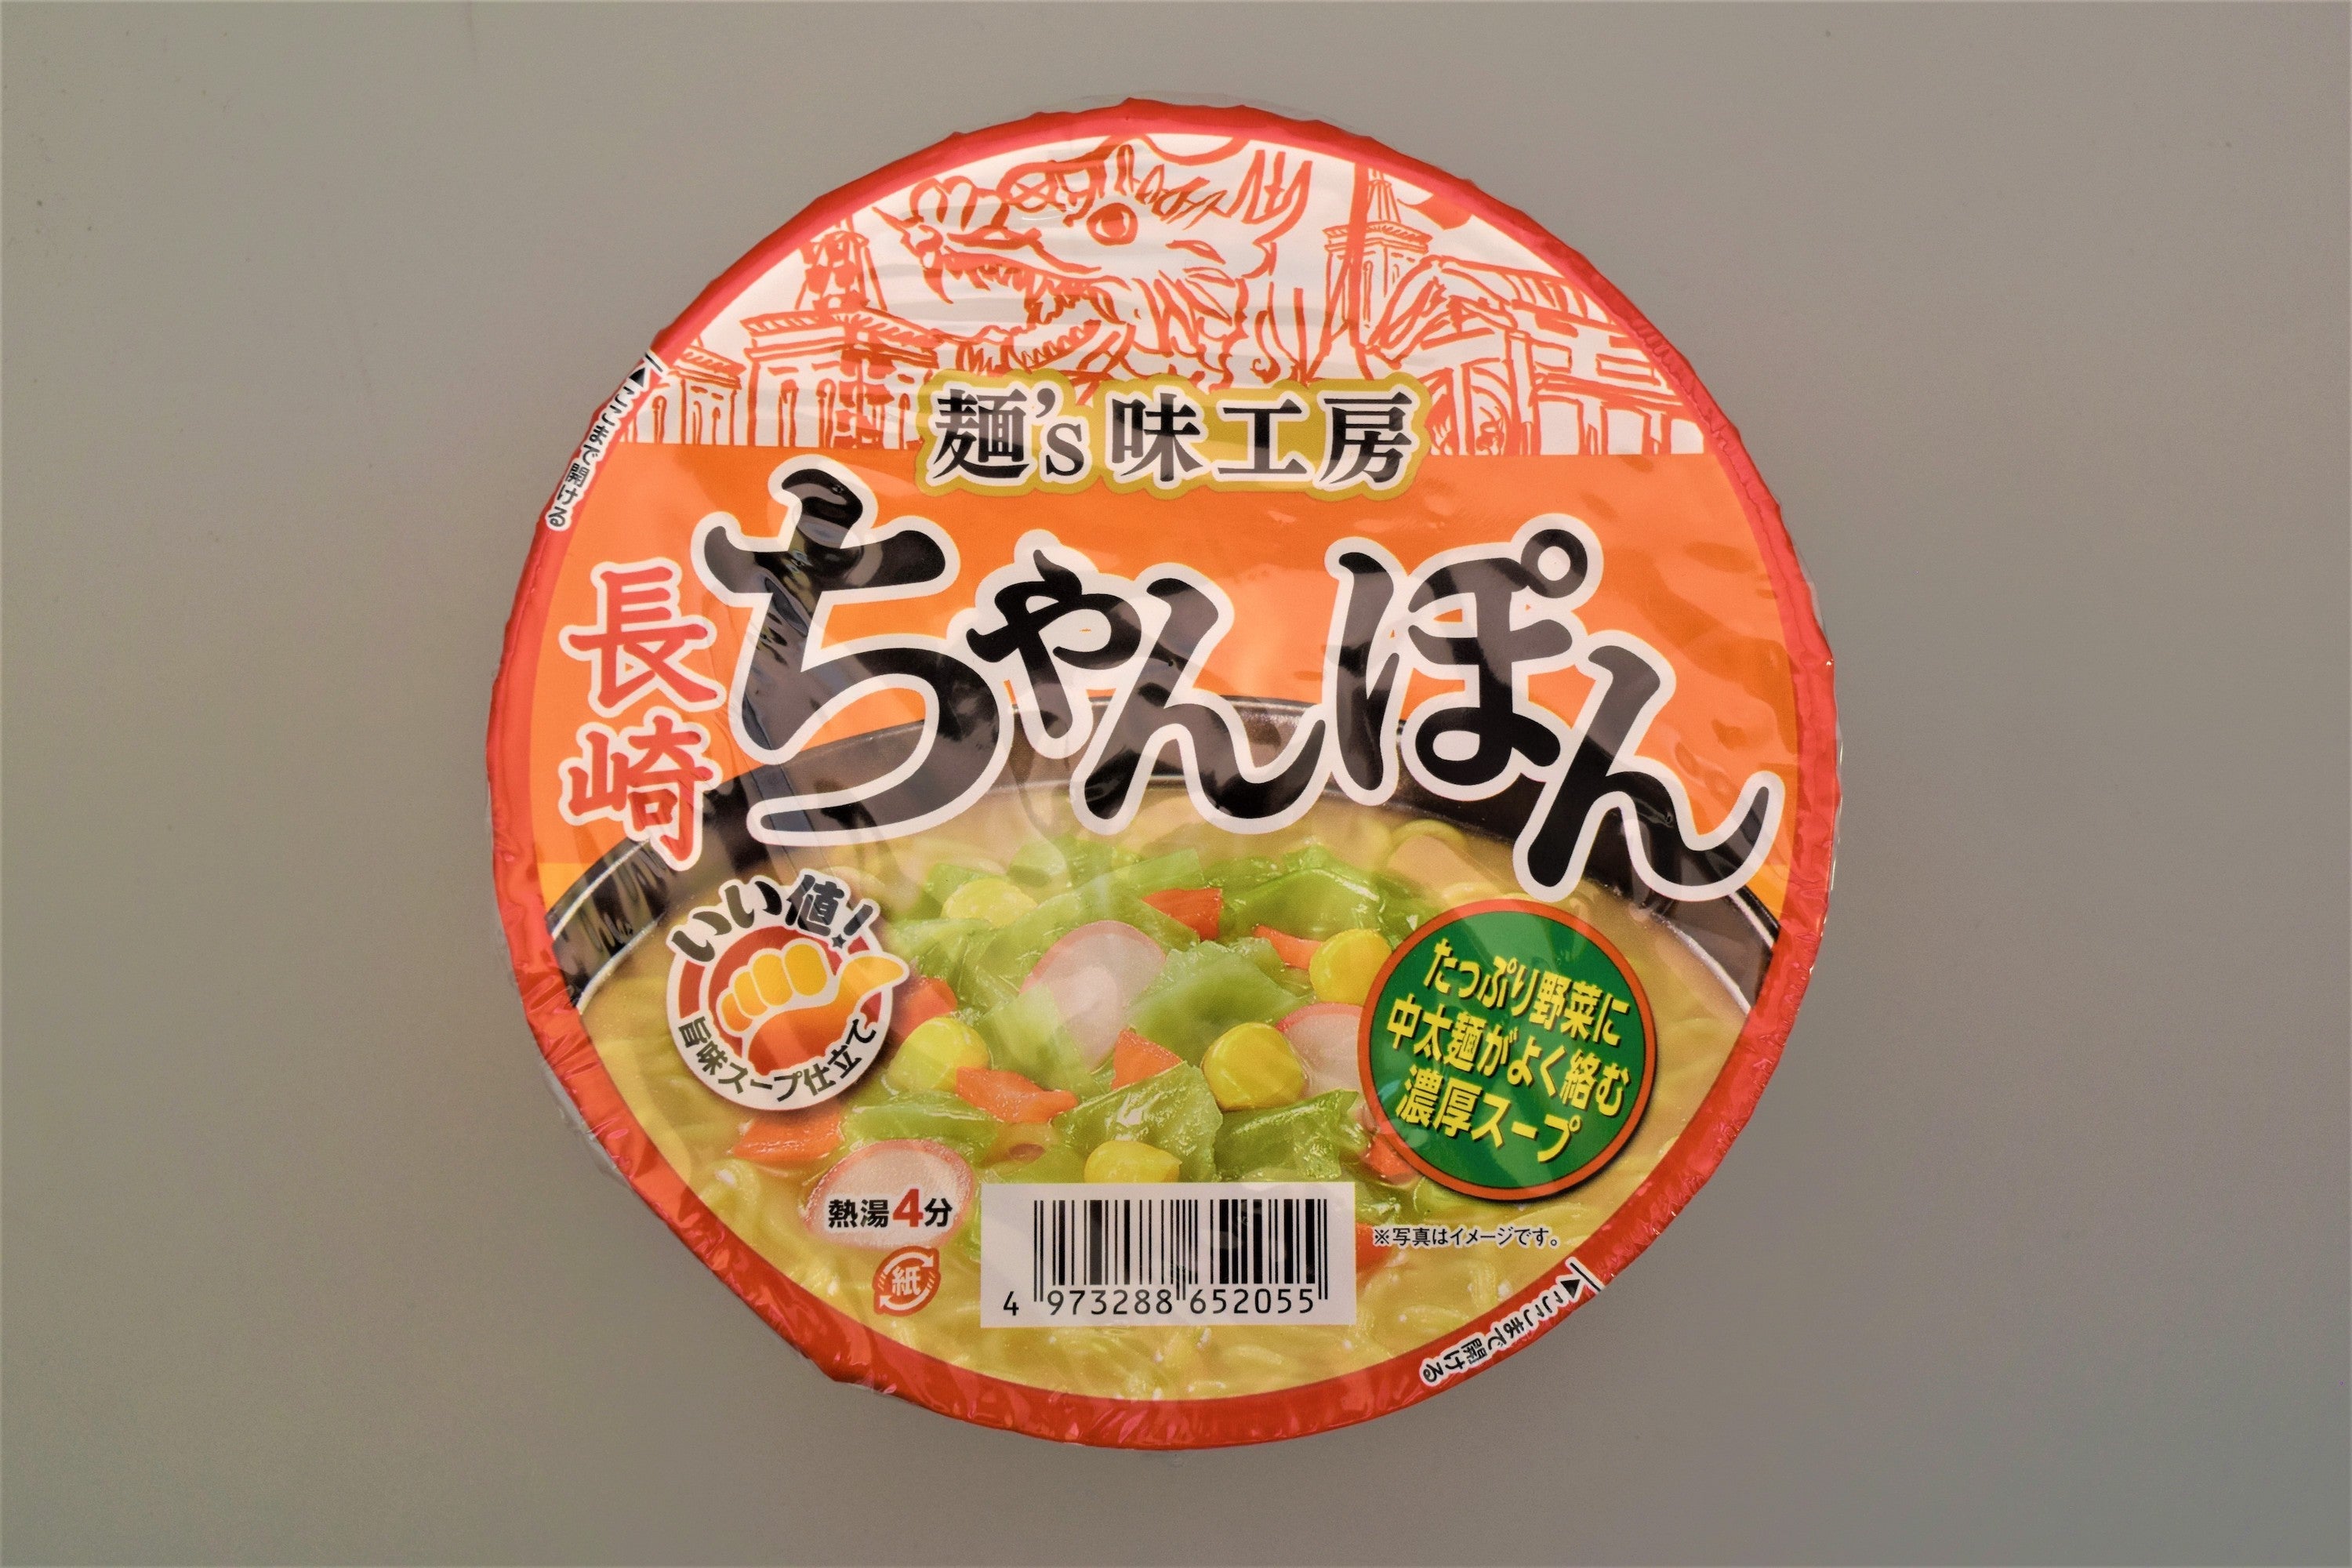 麺s味工房長崎ちゃんぽん 89g – トライアルネットスーパー ビジネス